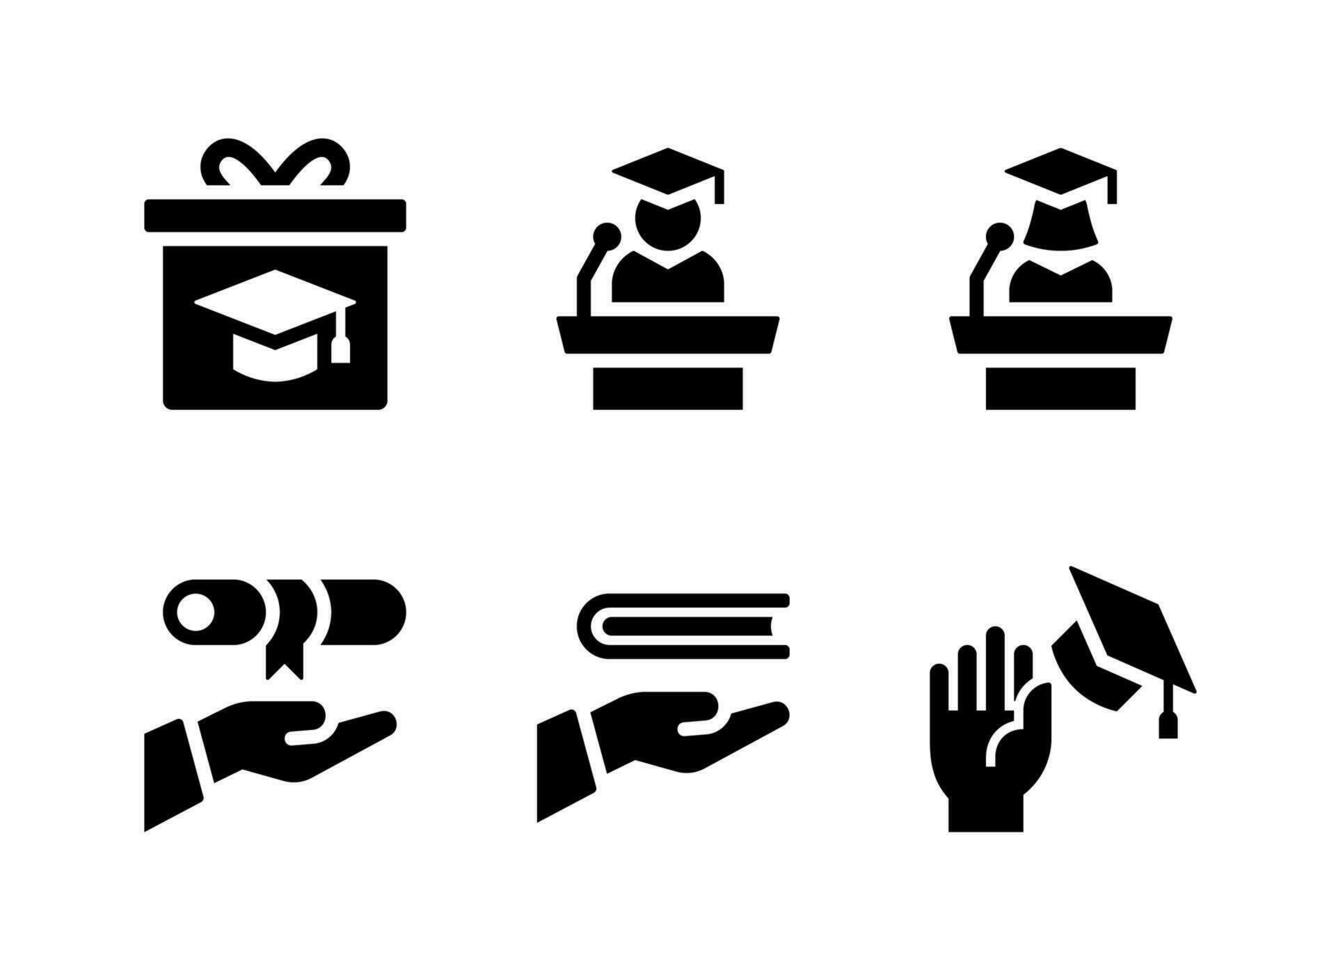 ensemble simple d'icônes solides vectorielles liées à l'obtention du diplôme. contient des icônes comme discours sur le podium, donnant un diplôme, etc. vecteur